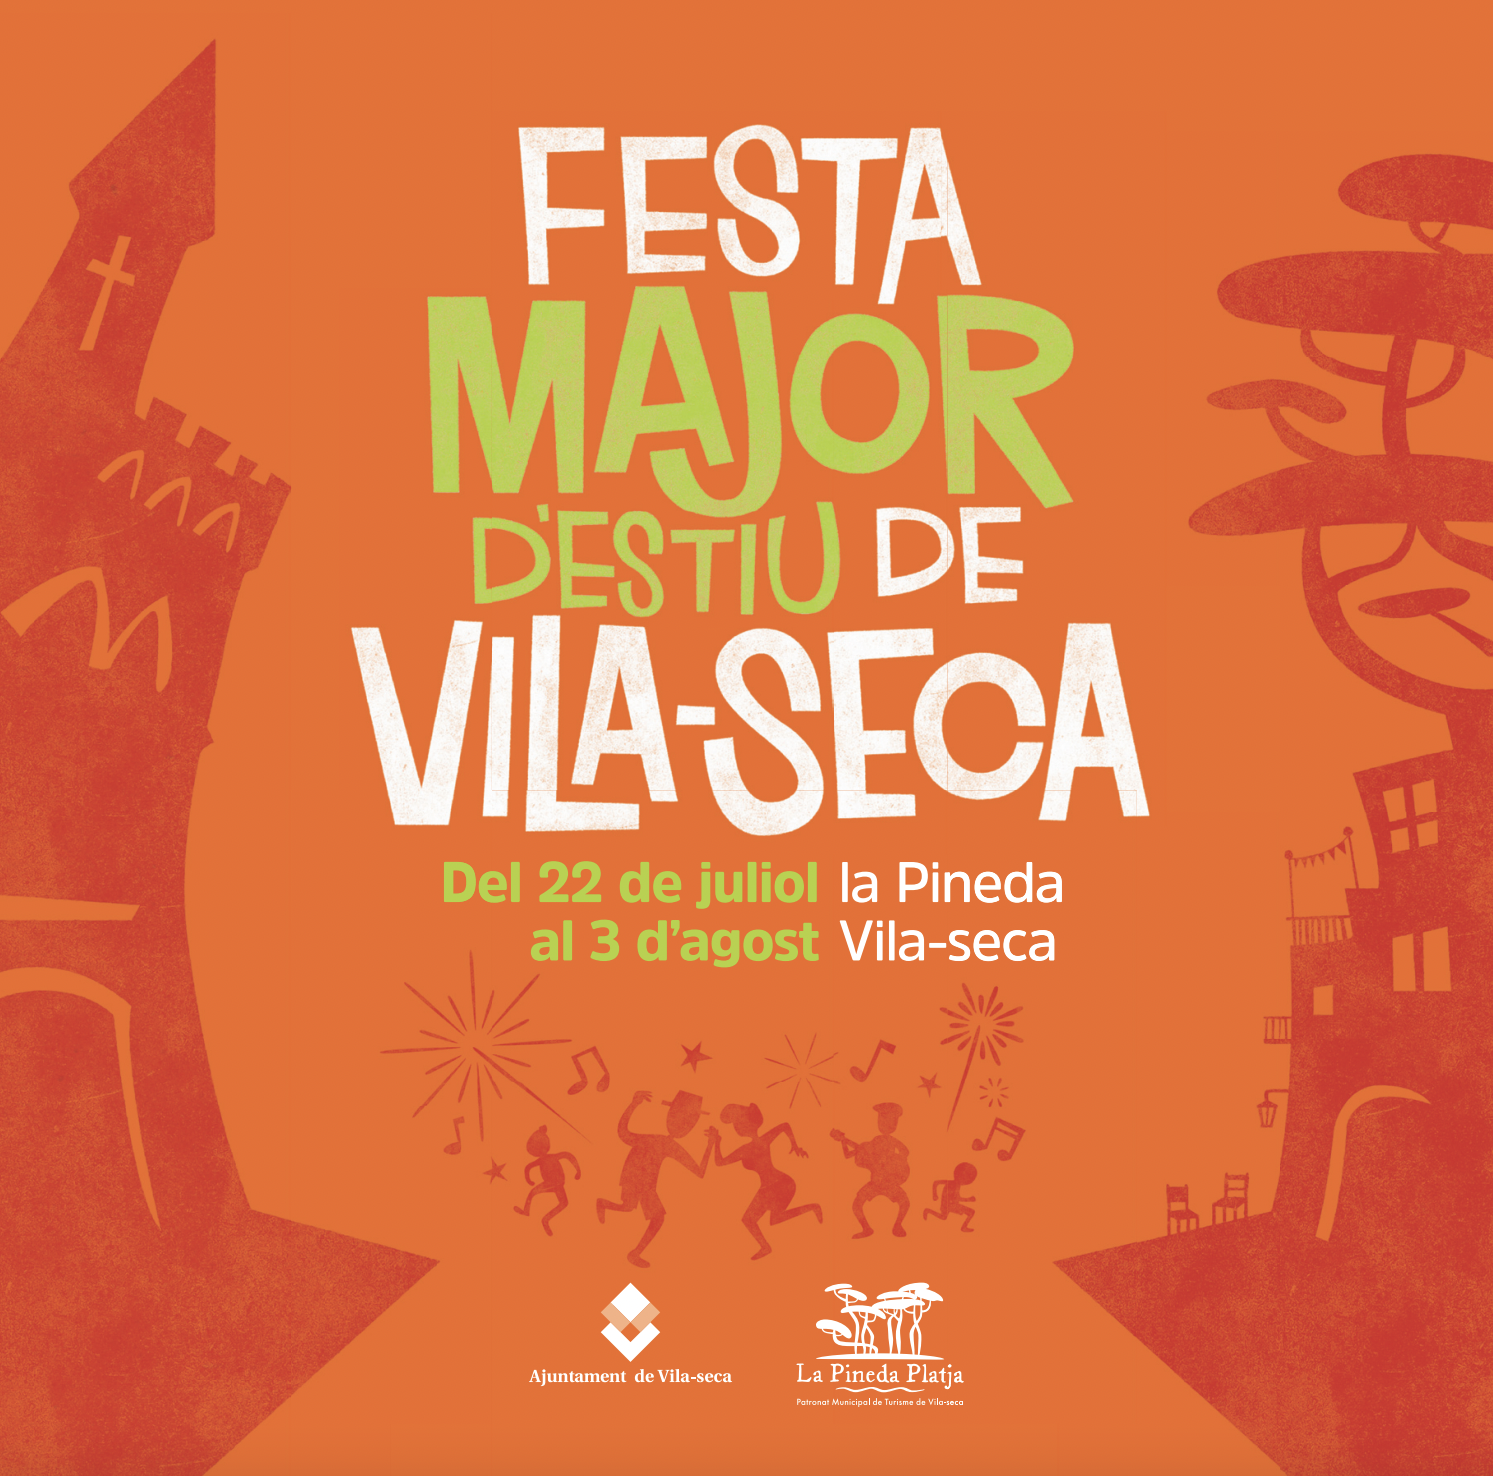 Festa Major d'Estiu Vila-seca